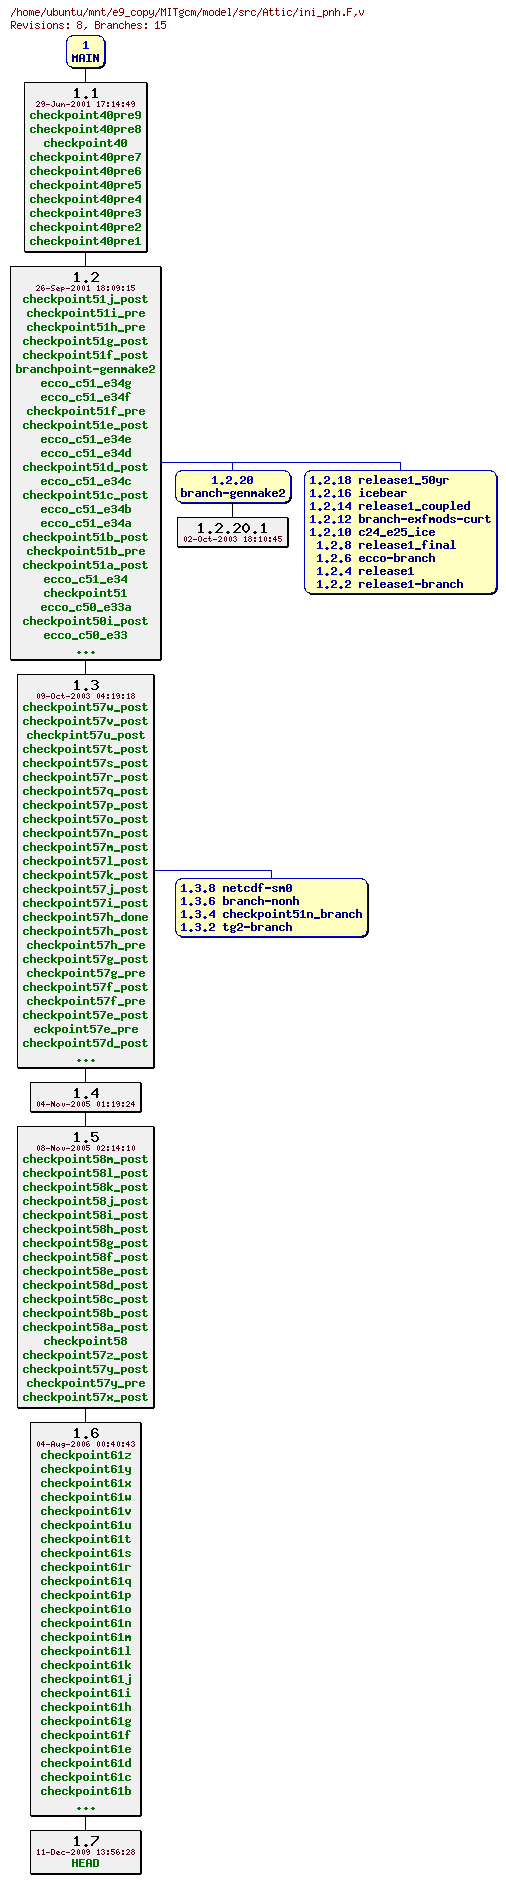 Revisions of MITgcm/model/src/ini_pnh.F